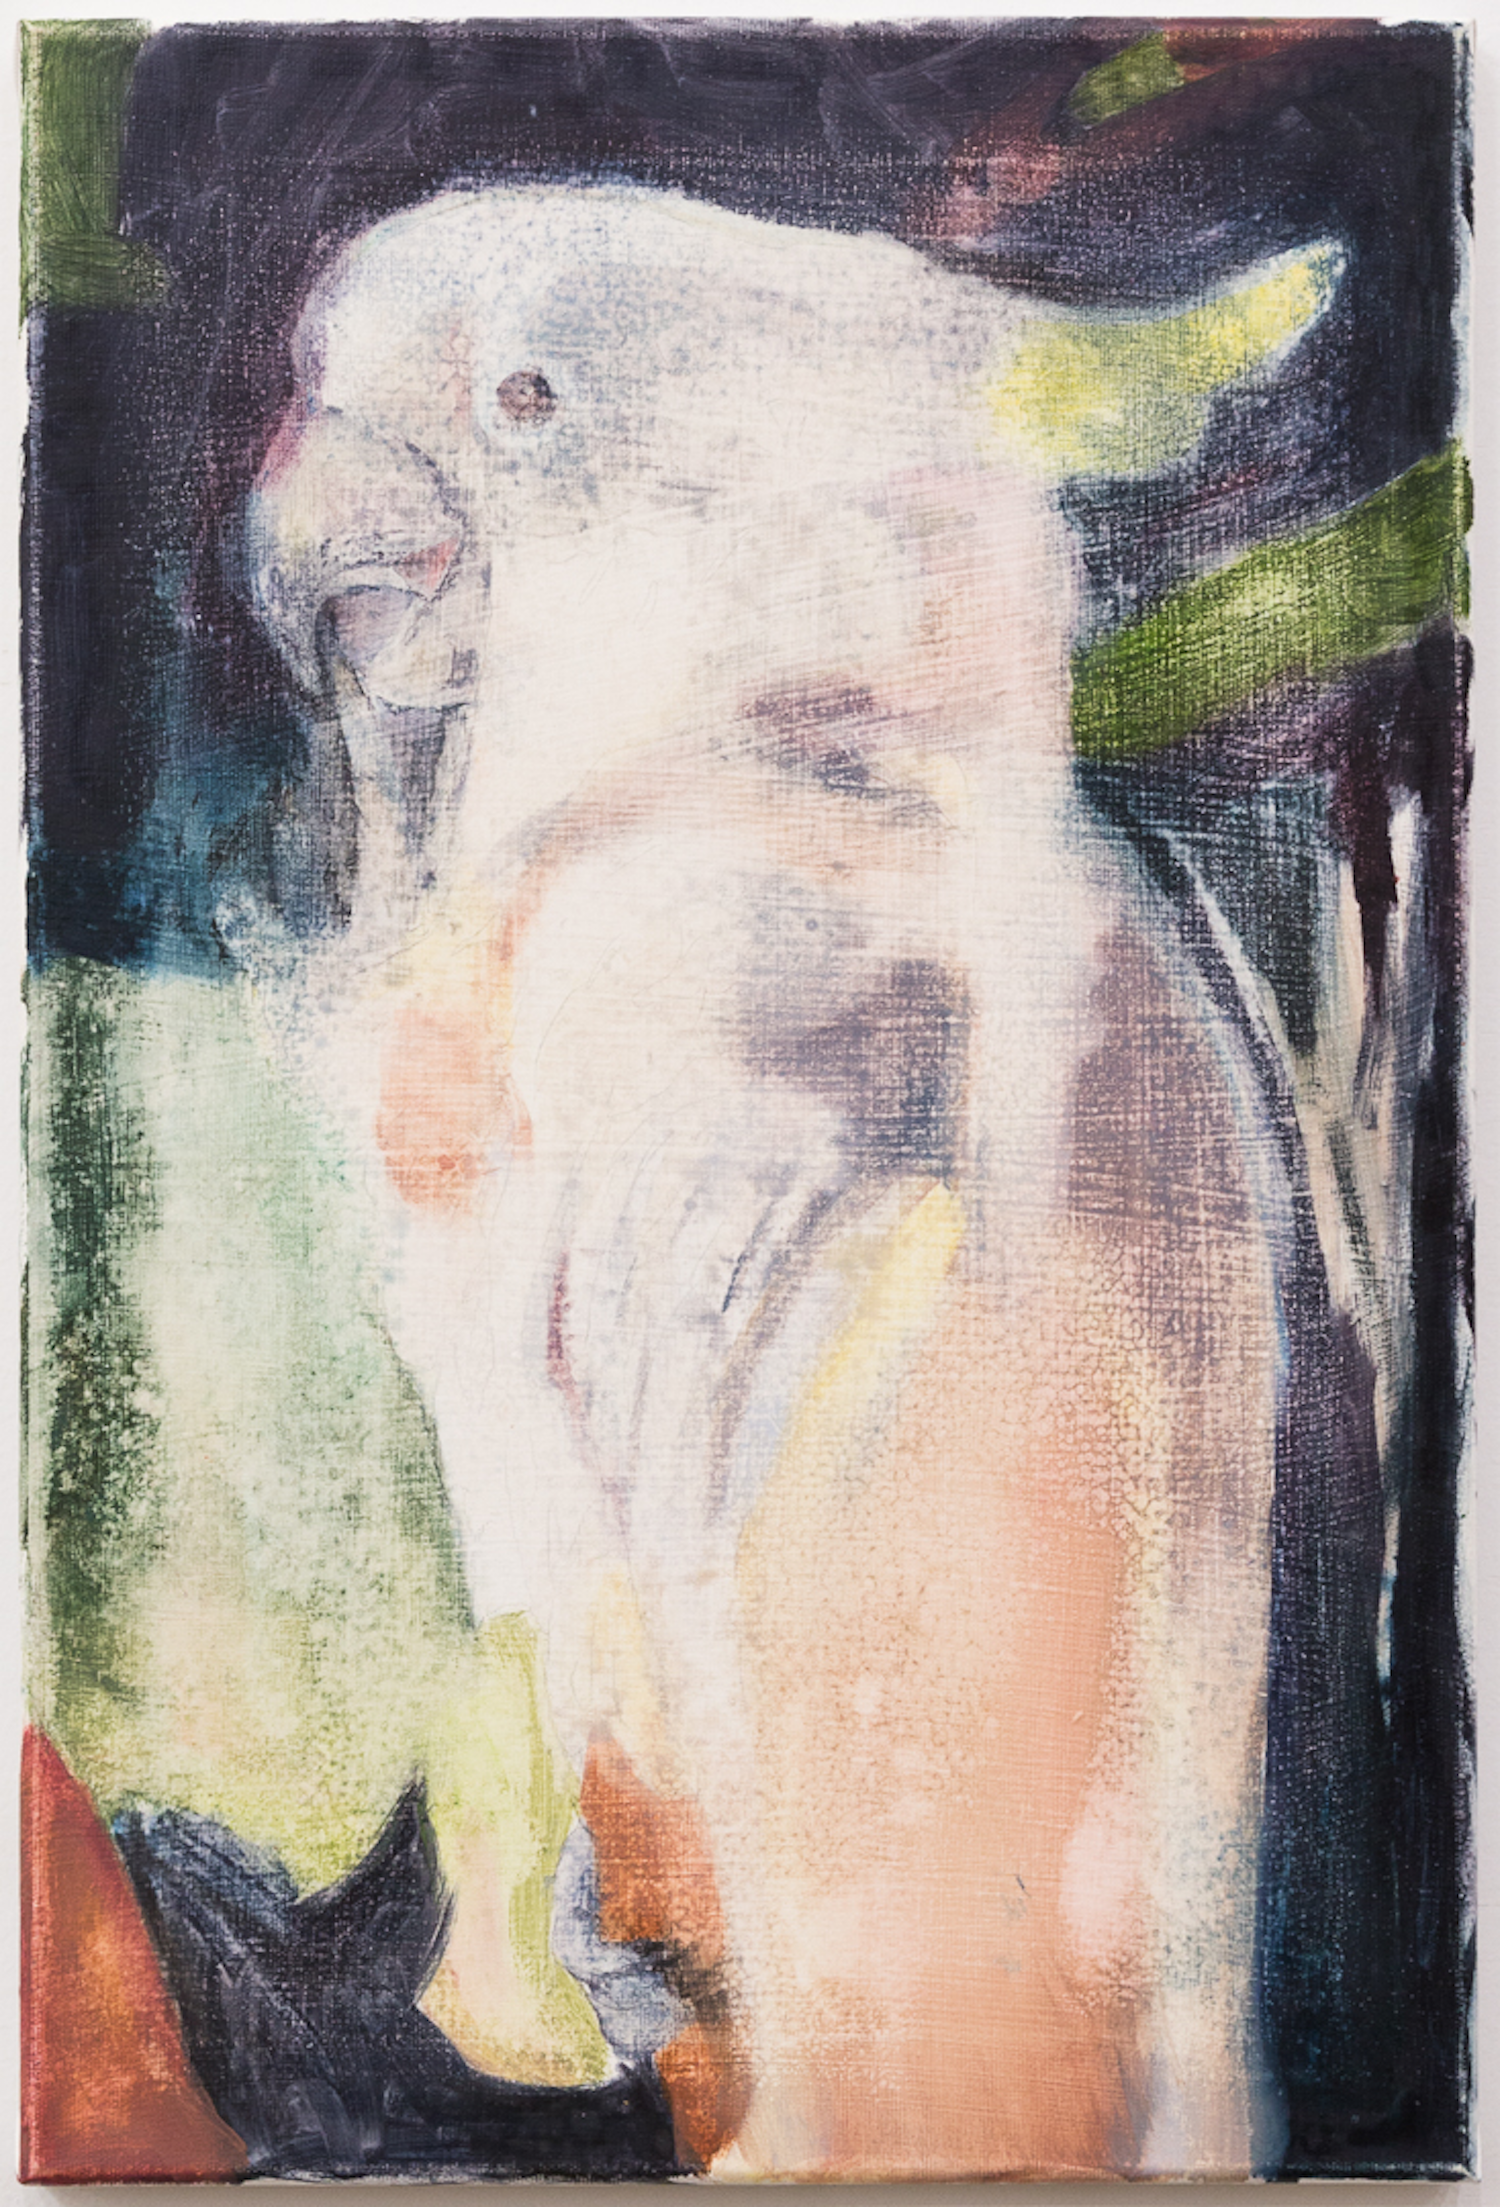  Paloma 2015  56 x 40 cm. oil on canvas 